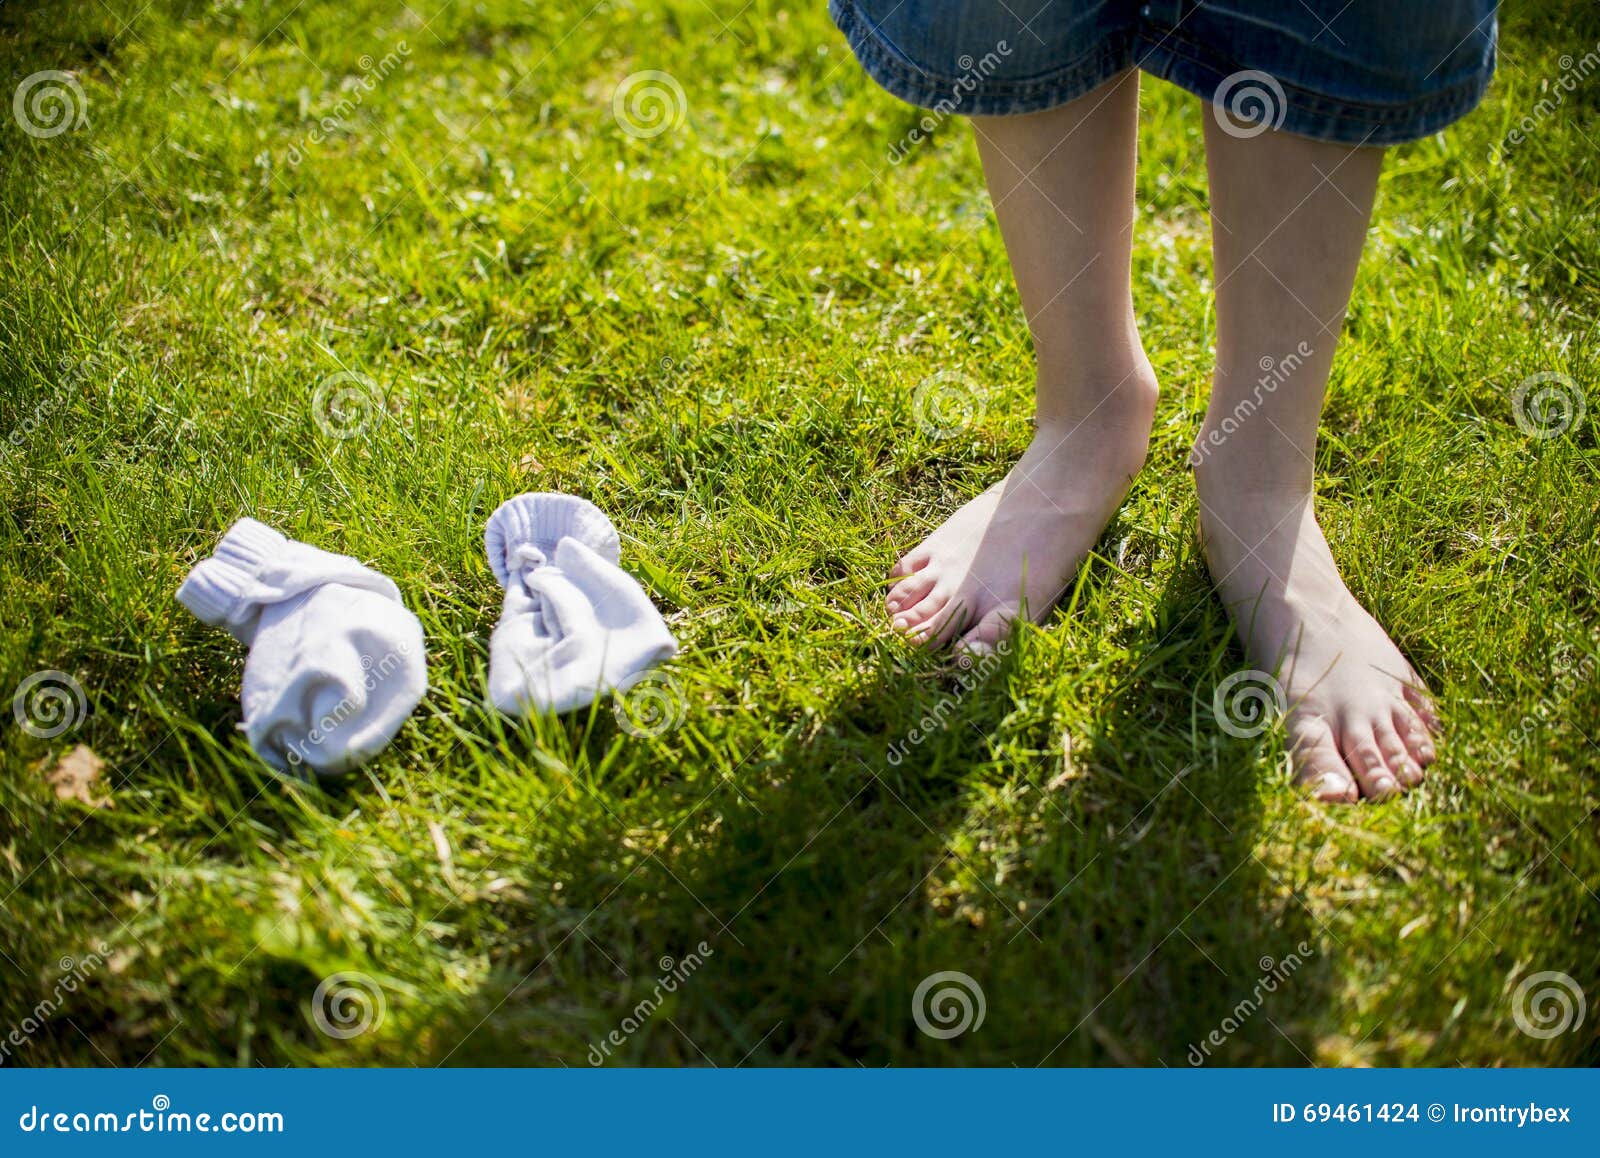 踏青公园街拍系列No.991 大学校园草坪上出现的脱鞋脱袜晾脚美景-魅丝社-专注分享美女写真名站摄影图集